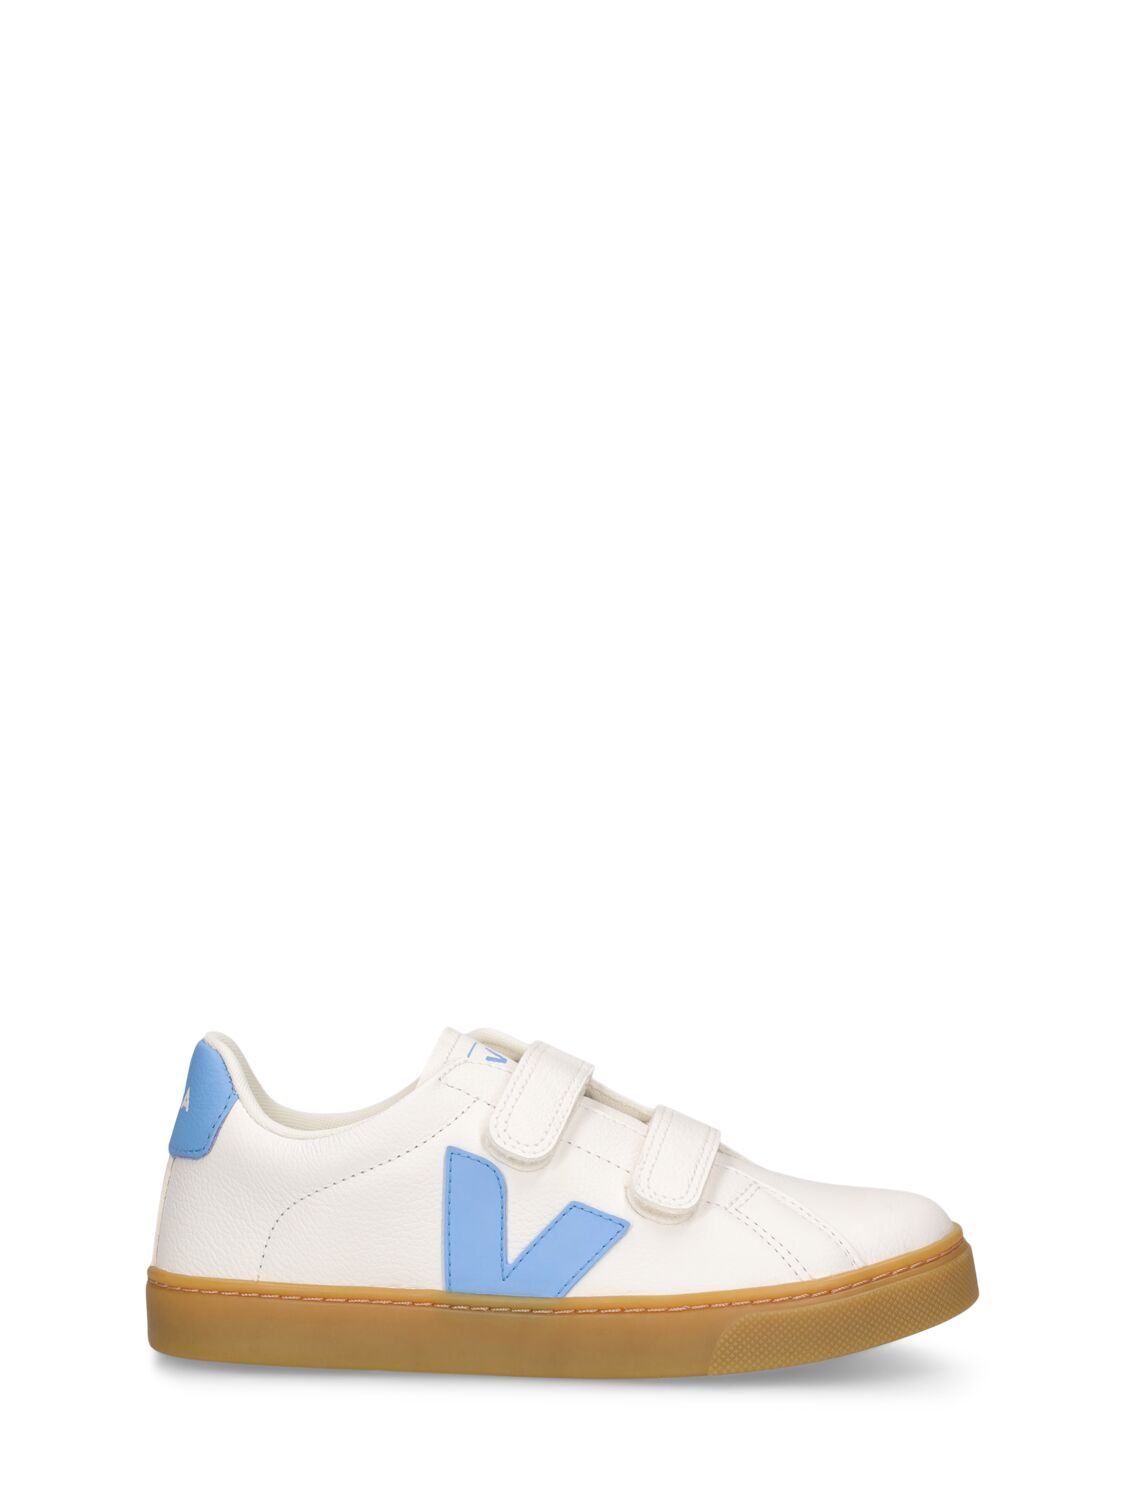 Veja Kids' Esplar Chrome-free Leather Sneakers In White,light Blue